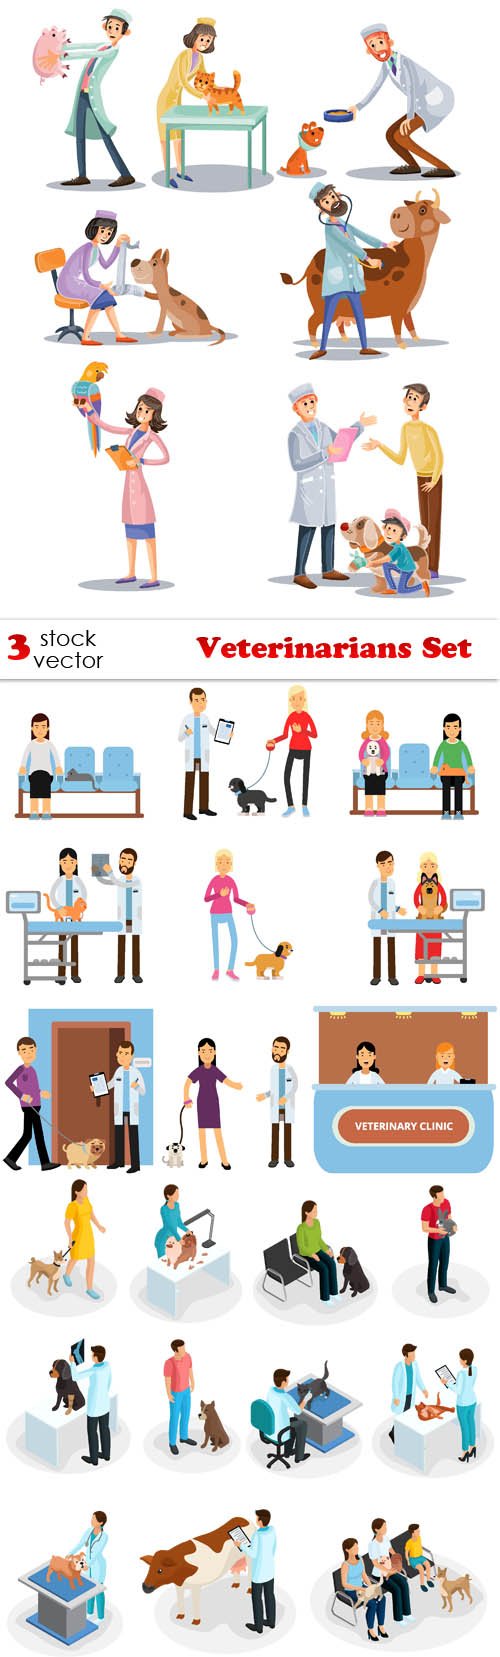 Vectors - Veterinarians Set